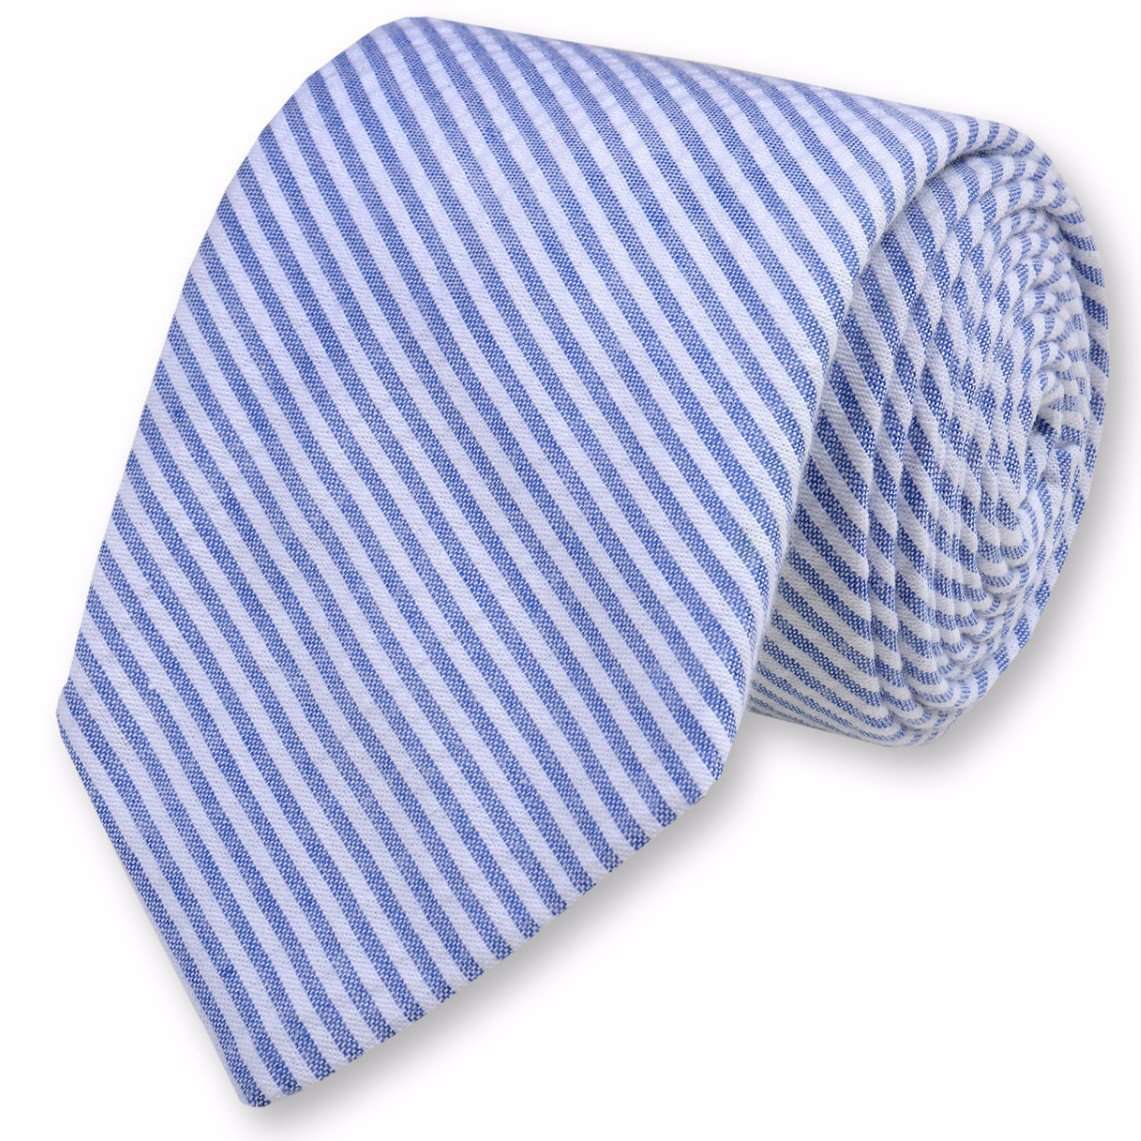 Seersucker Stripe Necktie in Classic Blue by High Cotton - Country Club Prep